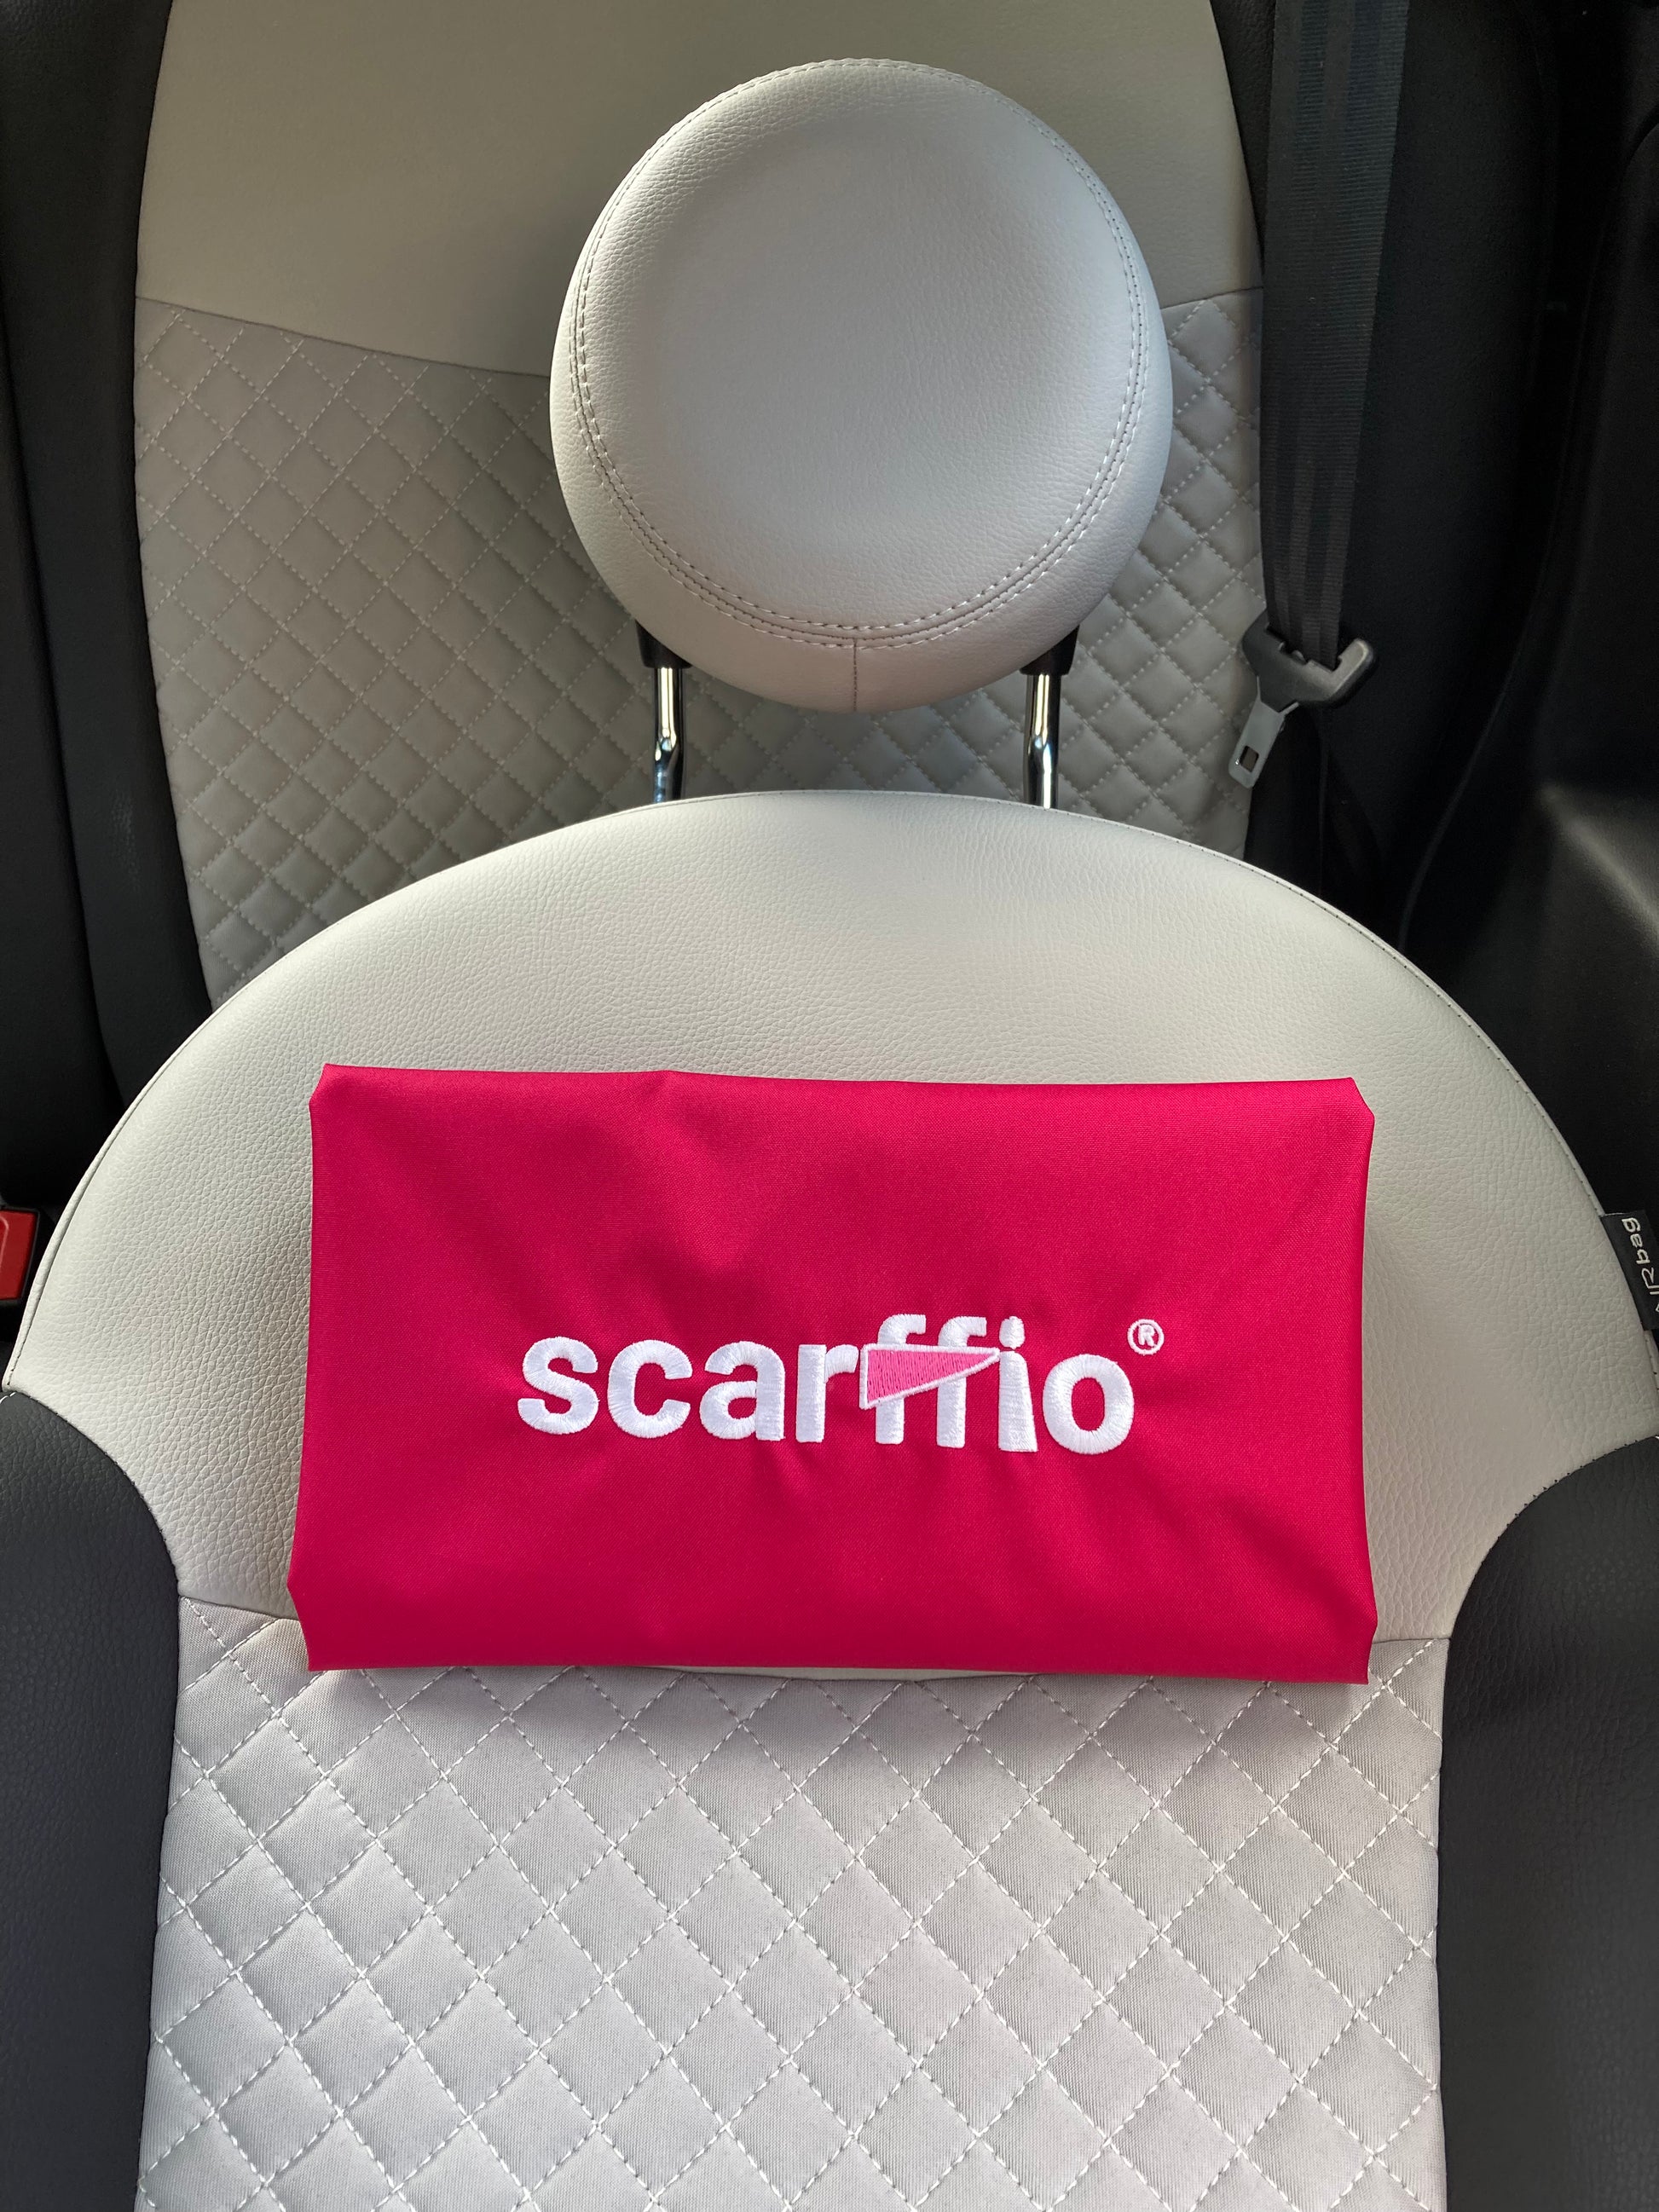 Hot Pink scarffio® - Scarffio Ltd